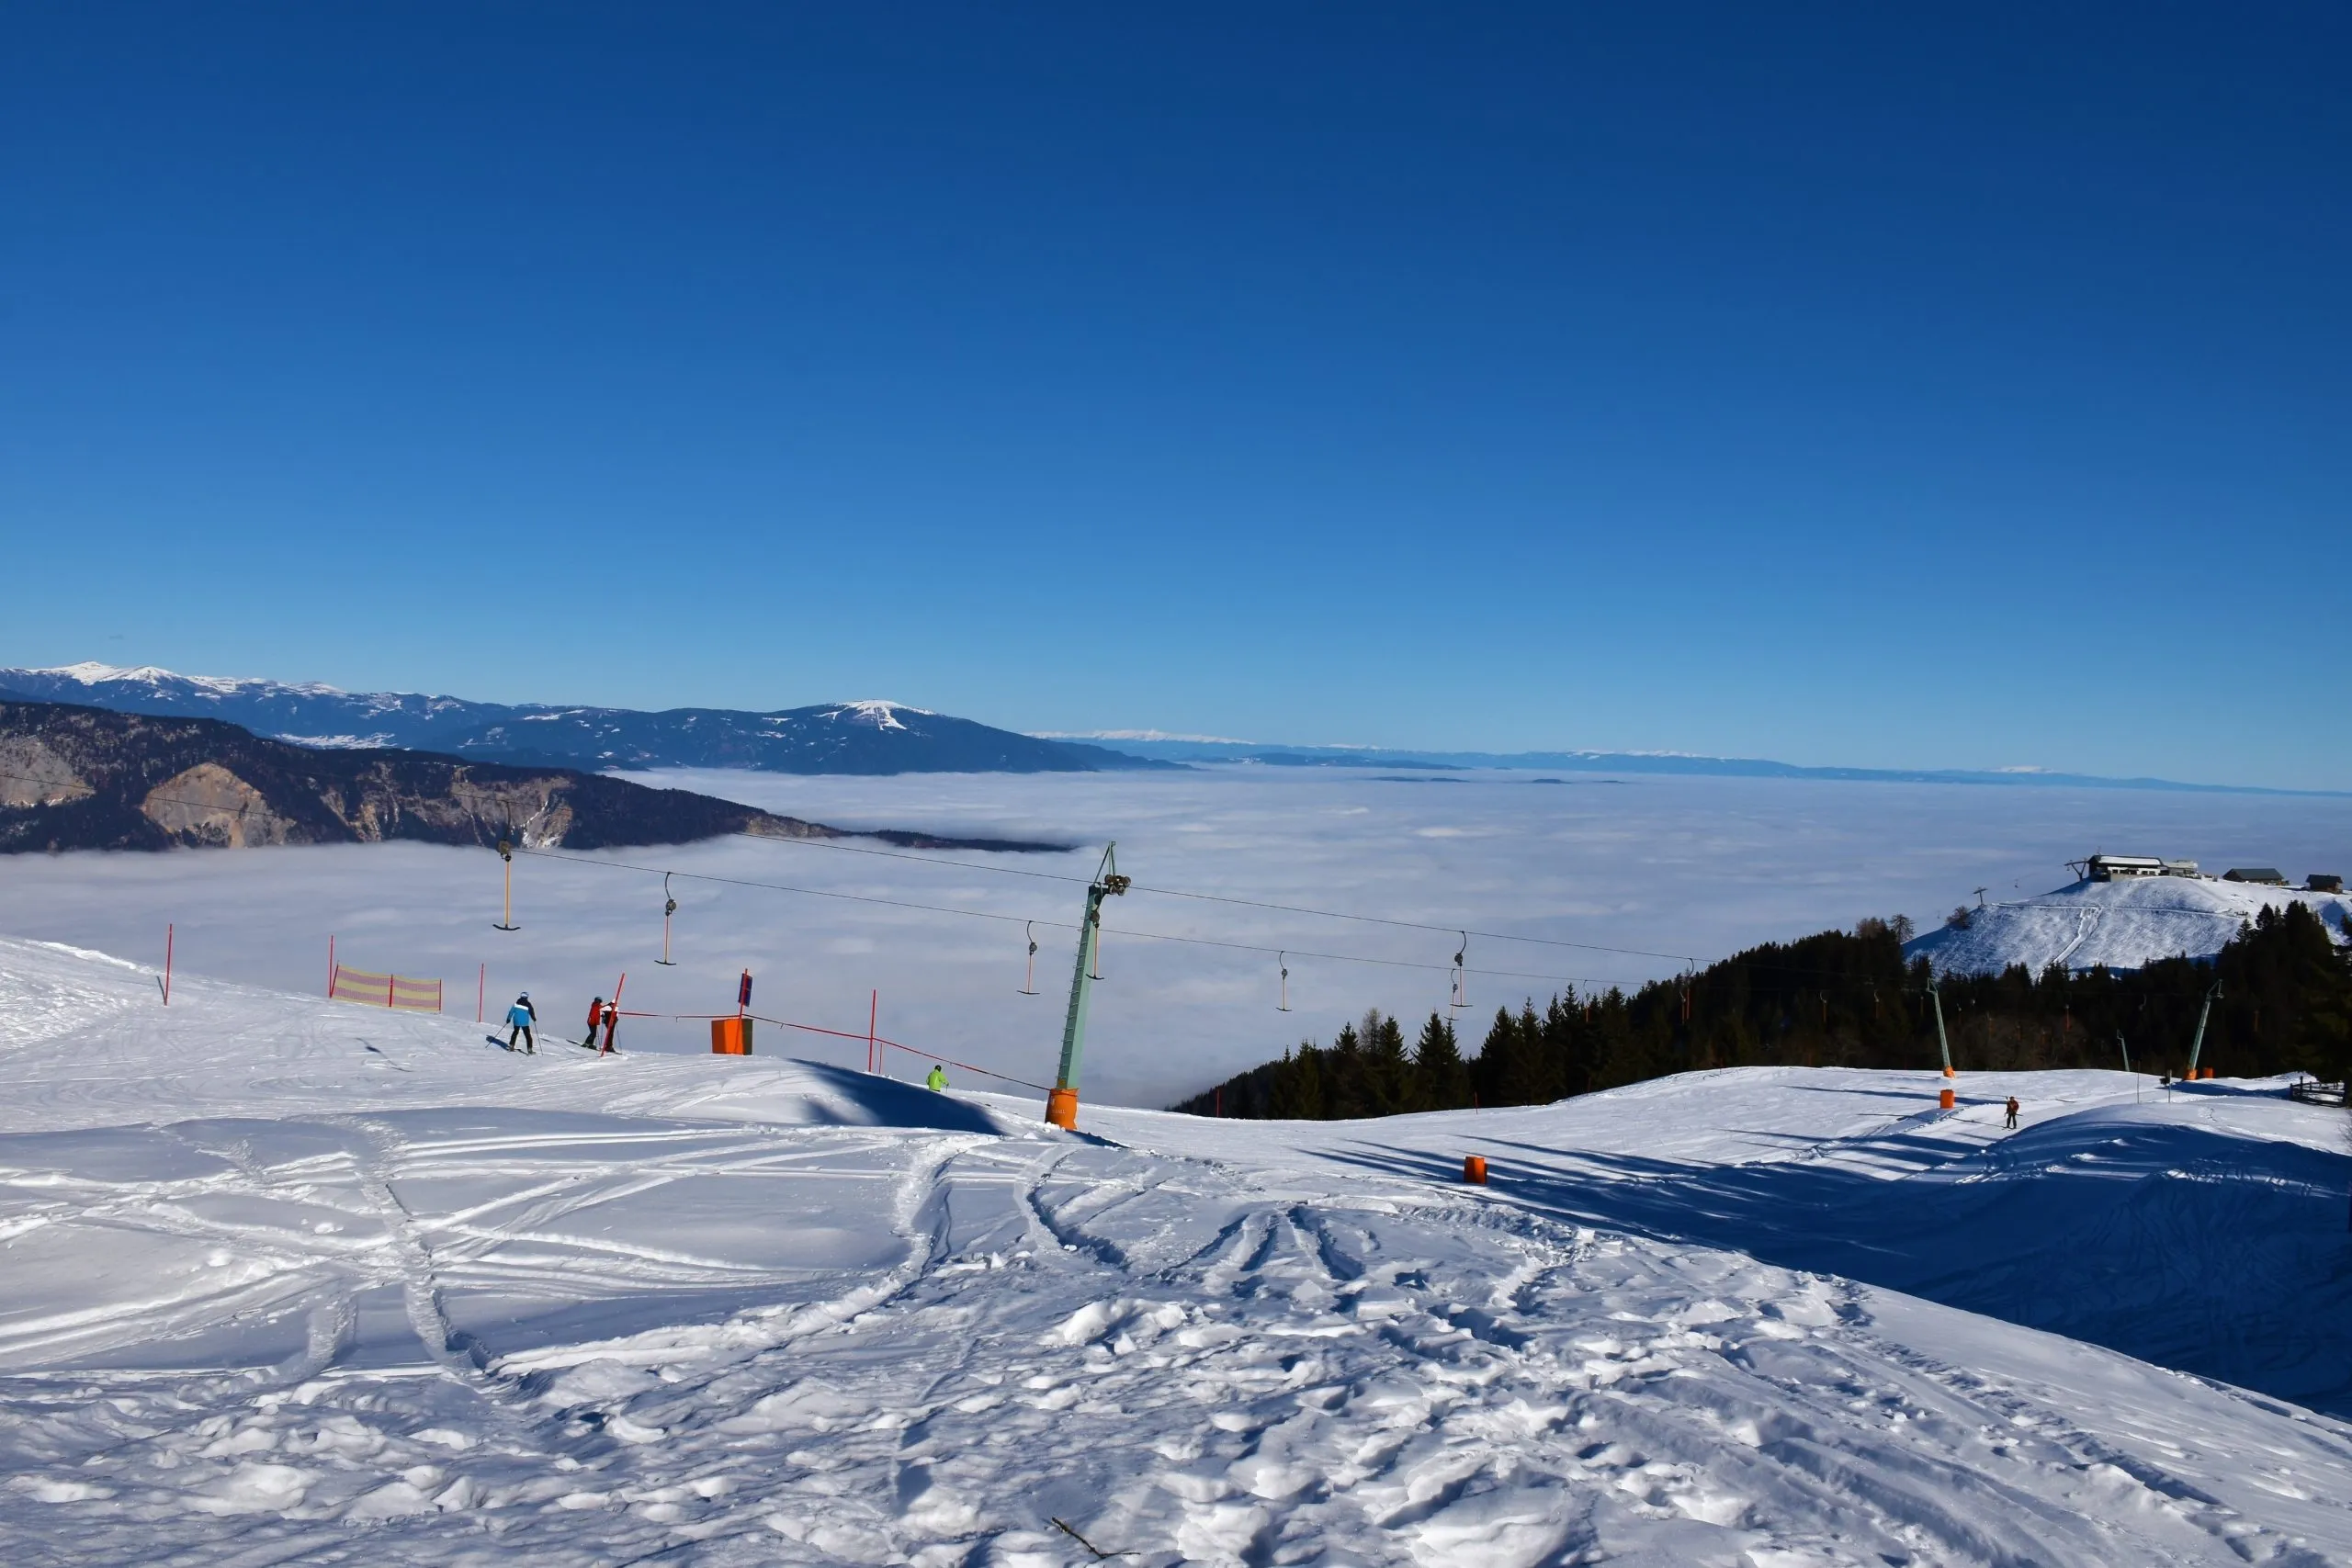 Arnoldstein ski resort above clouds